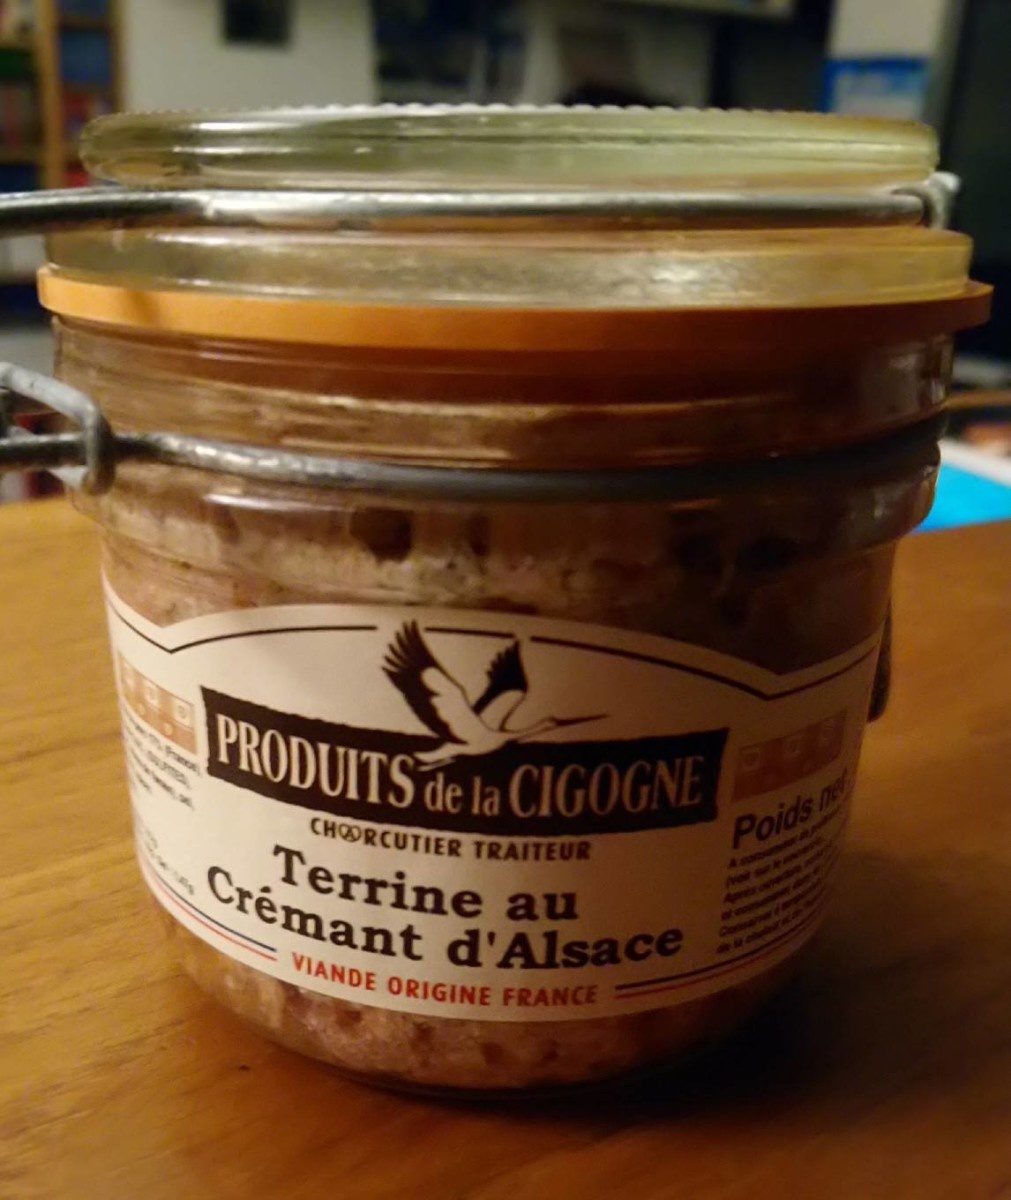 Terrine au Crémant d'Alsace - Product - fr